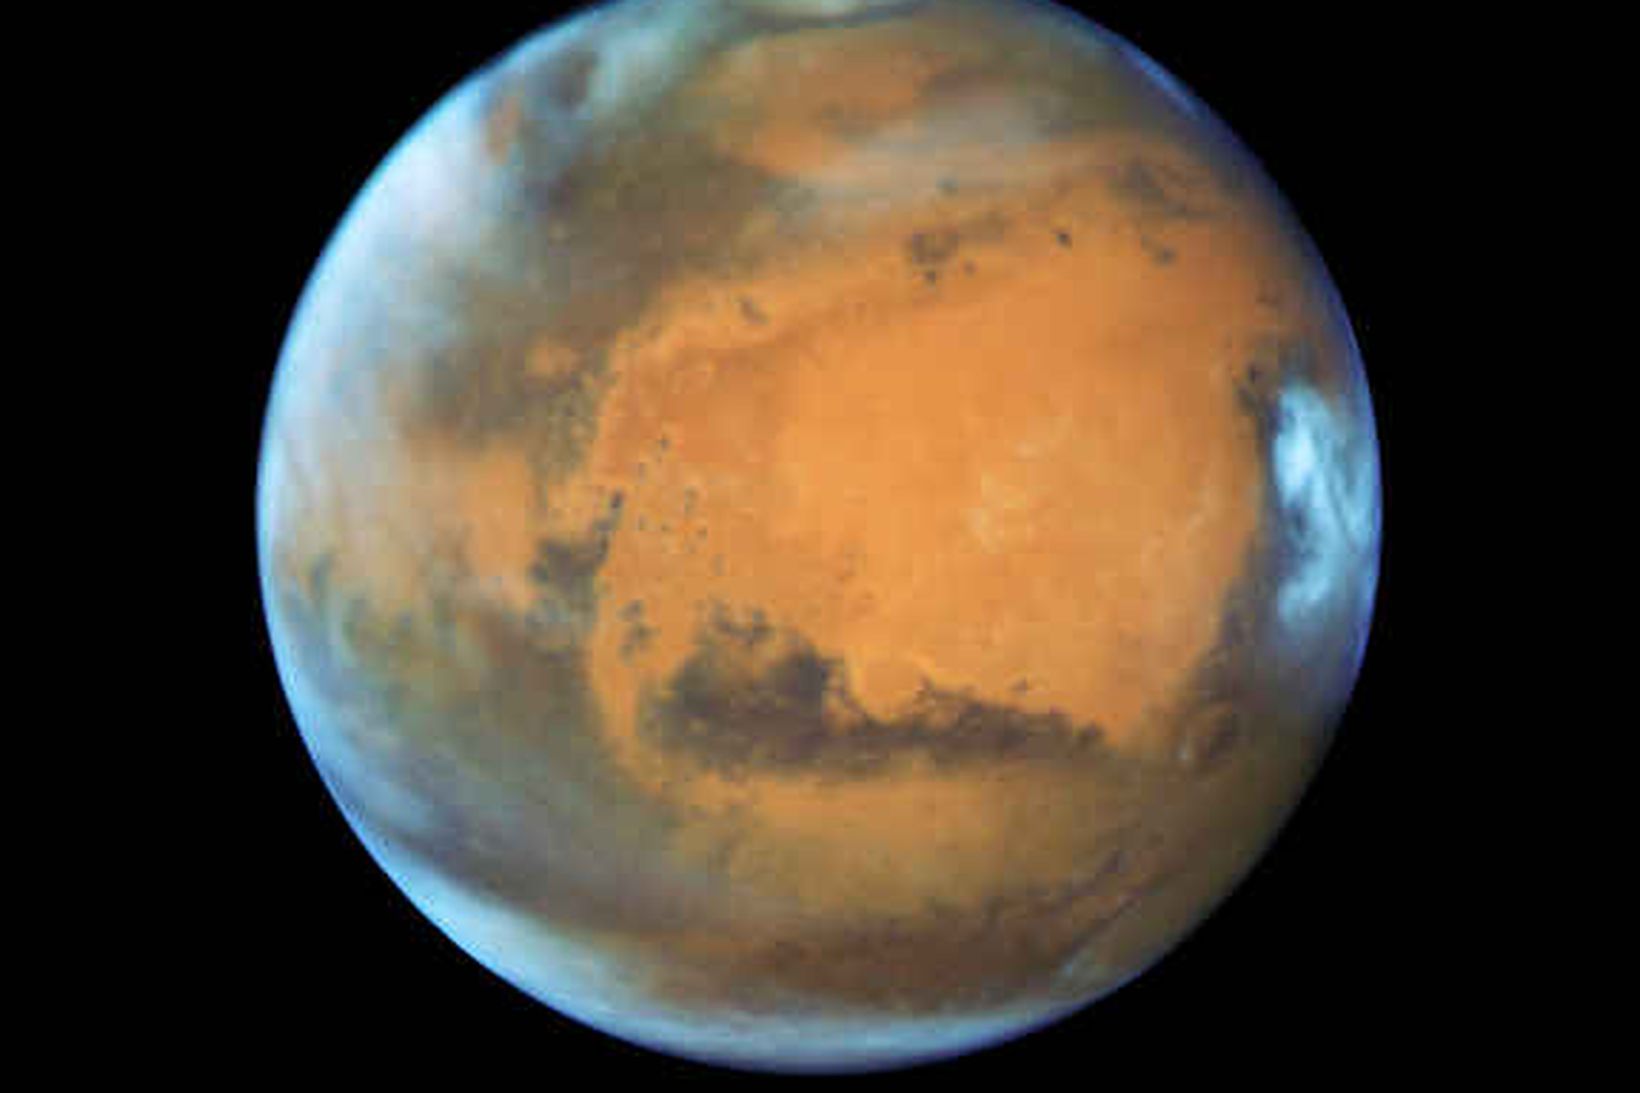 Mynd sem Hubble-geimsjónaukinn tók af Mars 12. maí. Mars er …